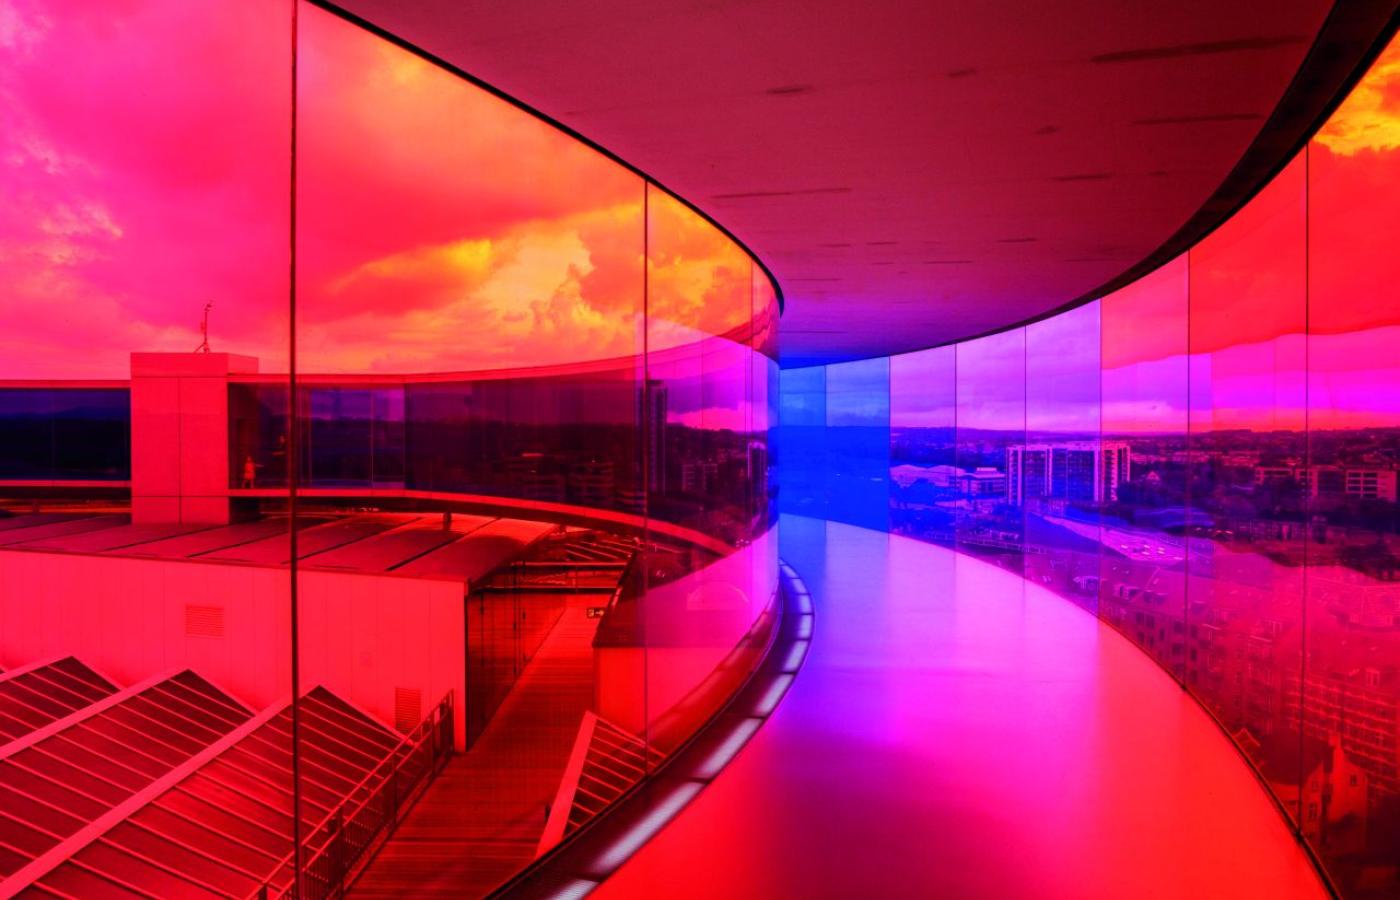  „Your Rainbow Panorama” (2011), czyli 150-metrowy spacerowy korytarz z tęczowych szyb, zbudowany na dachu ARoS Aarhus Art Museum w Danii.